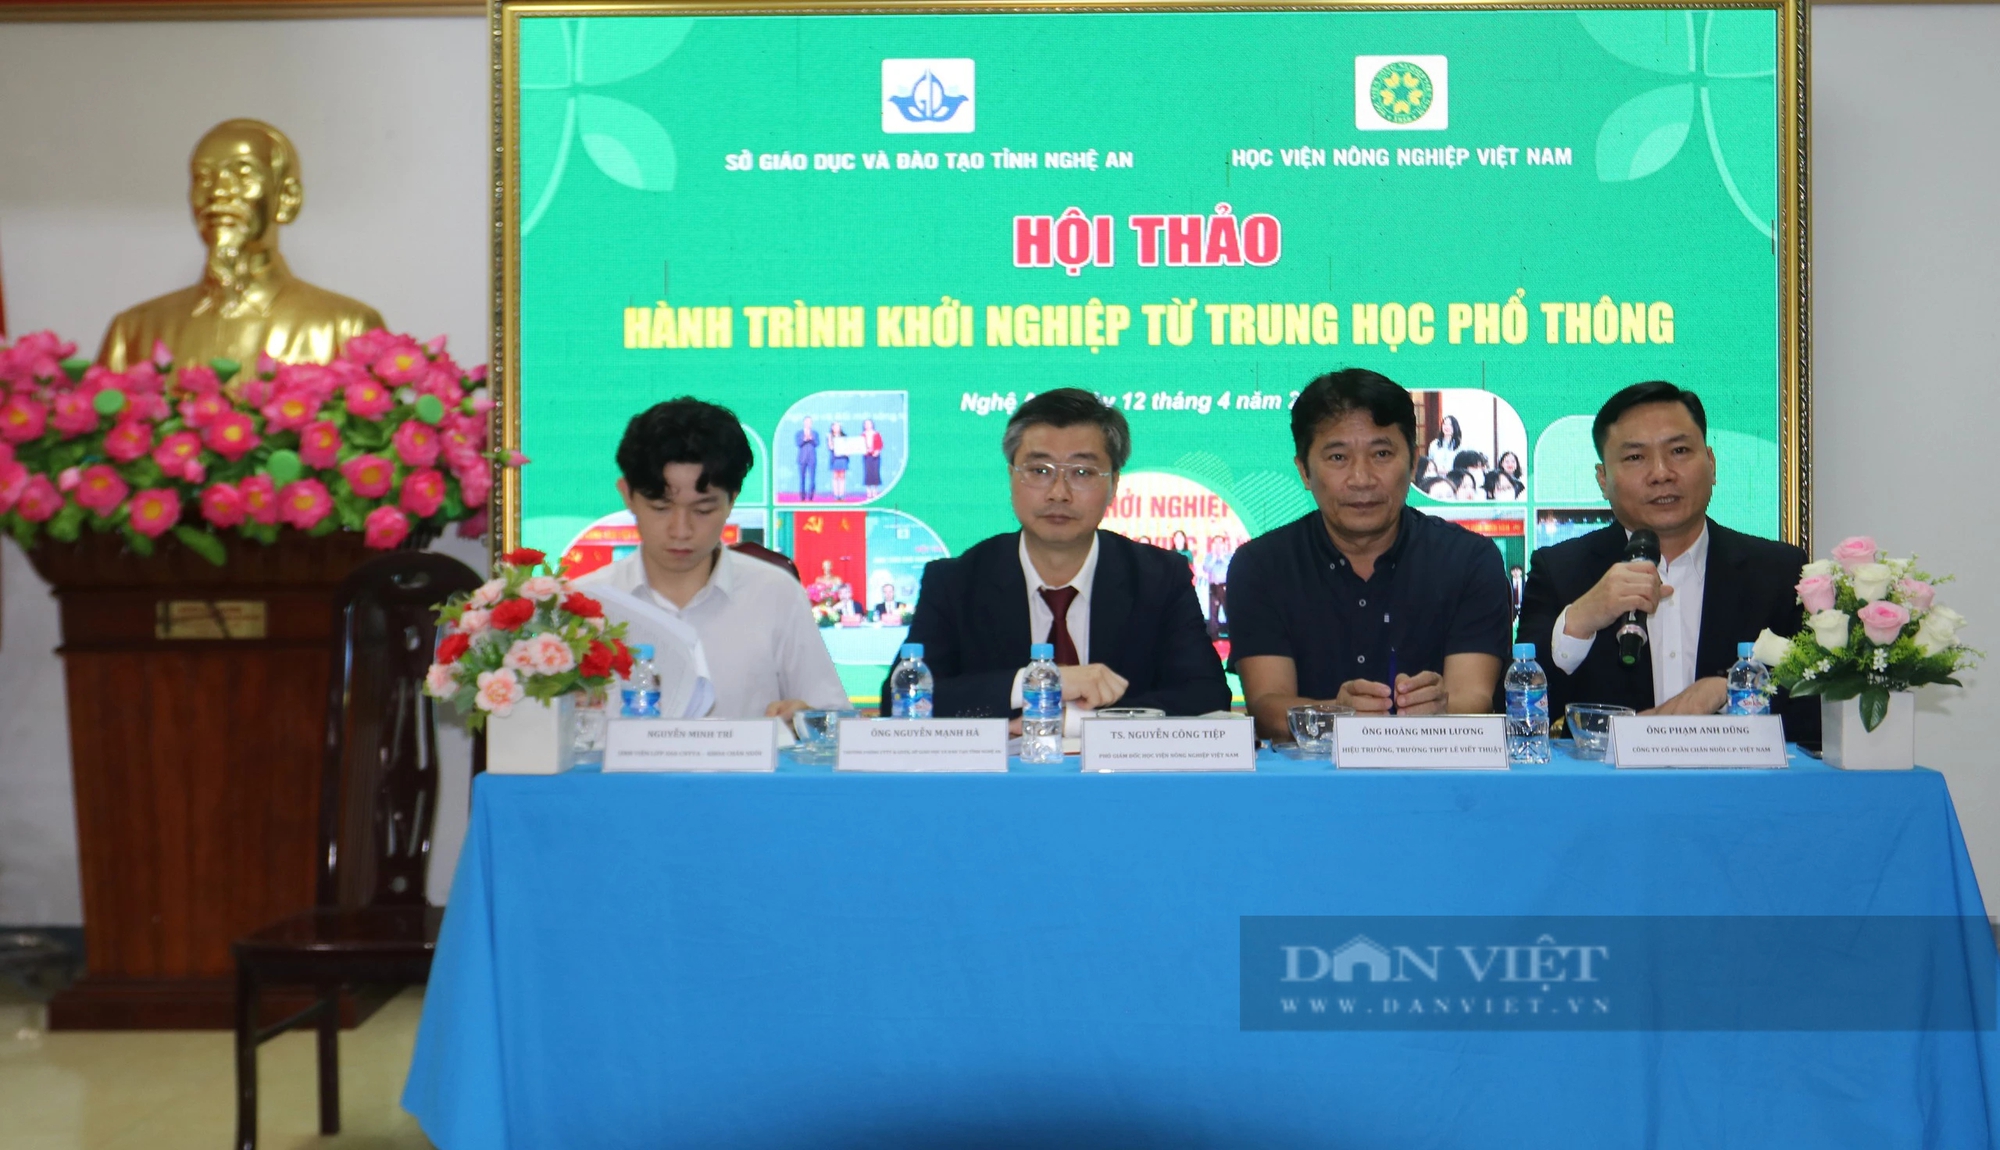 Học sinh Nghệ An hào hứng với hội thảo “Hành trình khởi nghiệp từ trung học phổ thông” của Học viện Nông nghiệp Việt Nam- Ảnh 1.